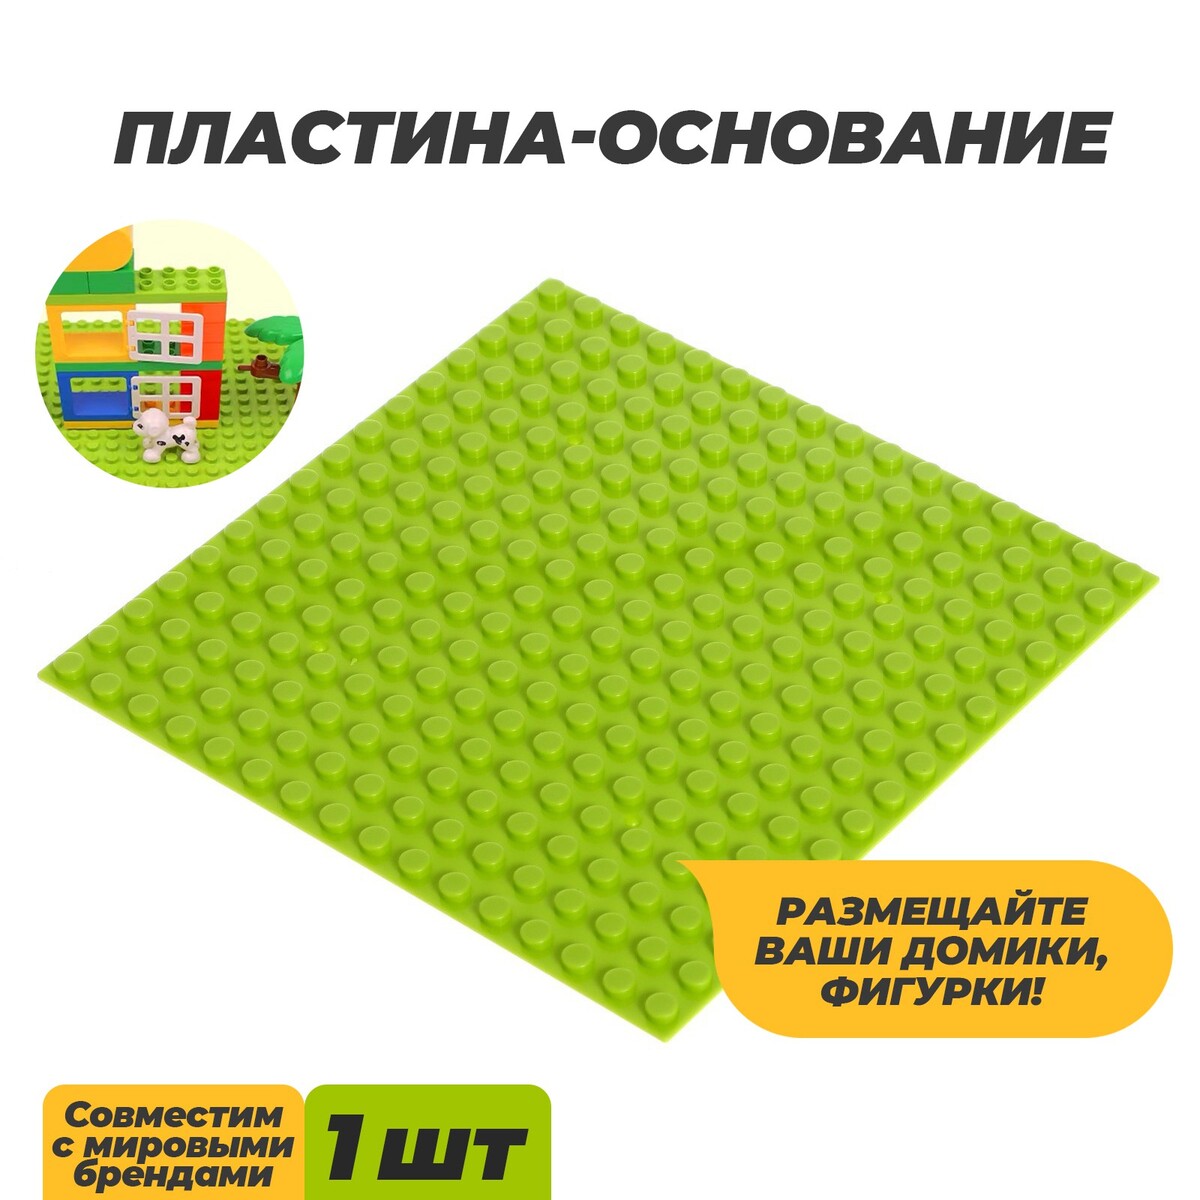 Пластина-основание для конструктора, 12,8 × 12,8 см, цвет салатовый пластина основание для конструктора 38 4 × 38 4 см салатовый